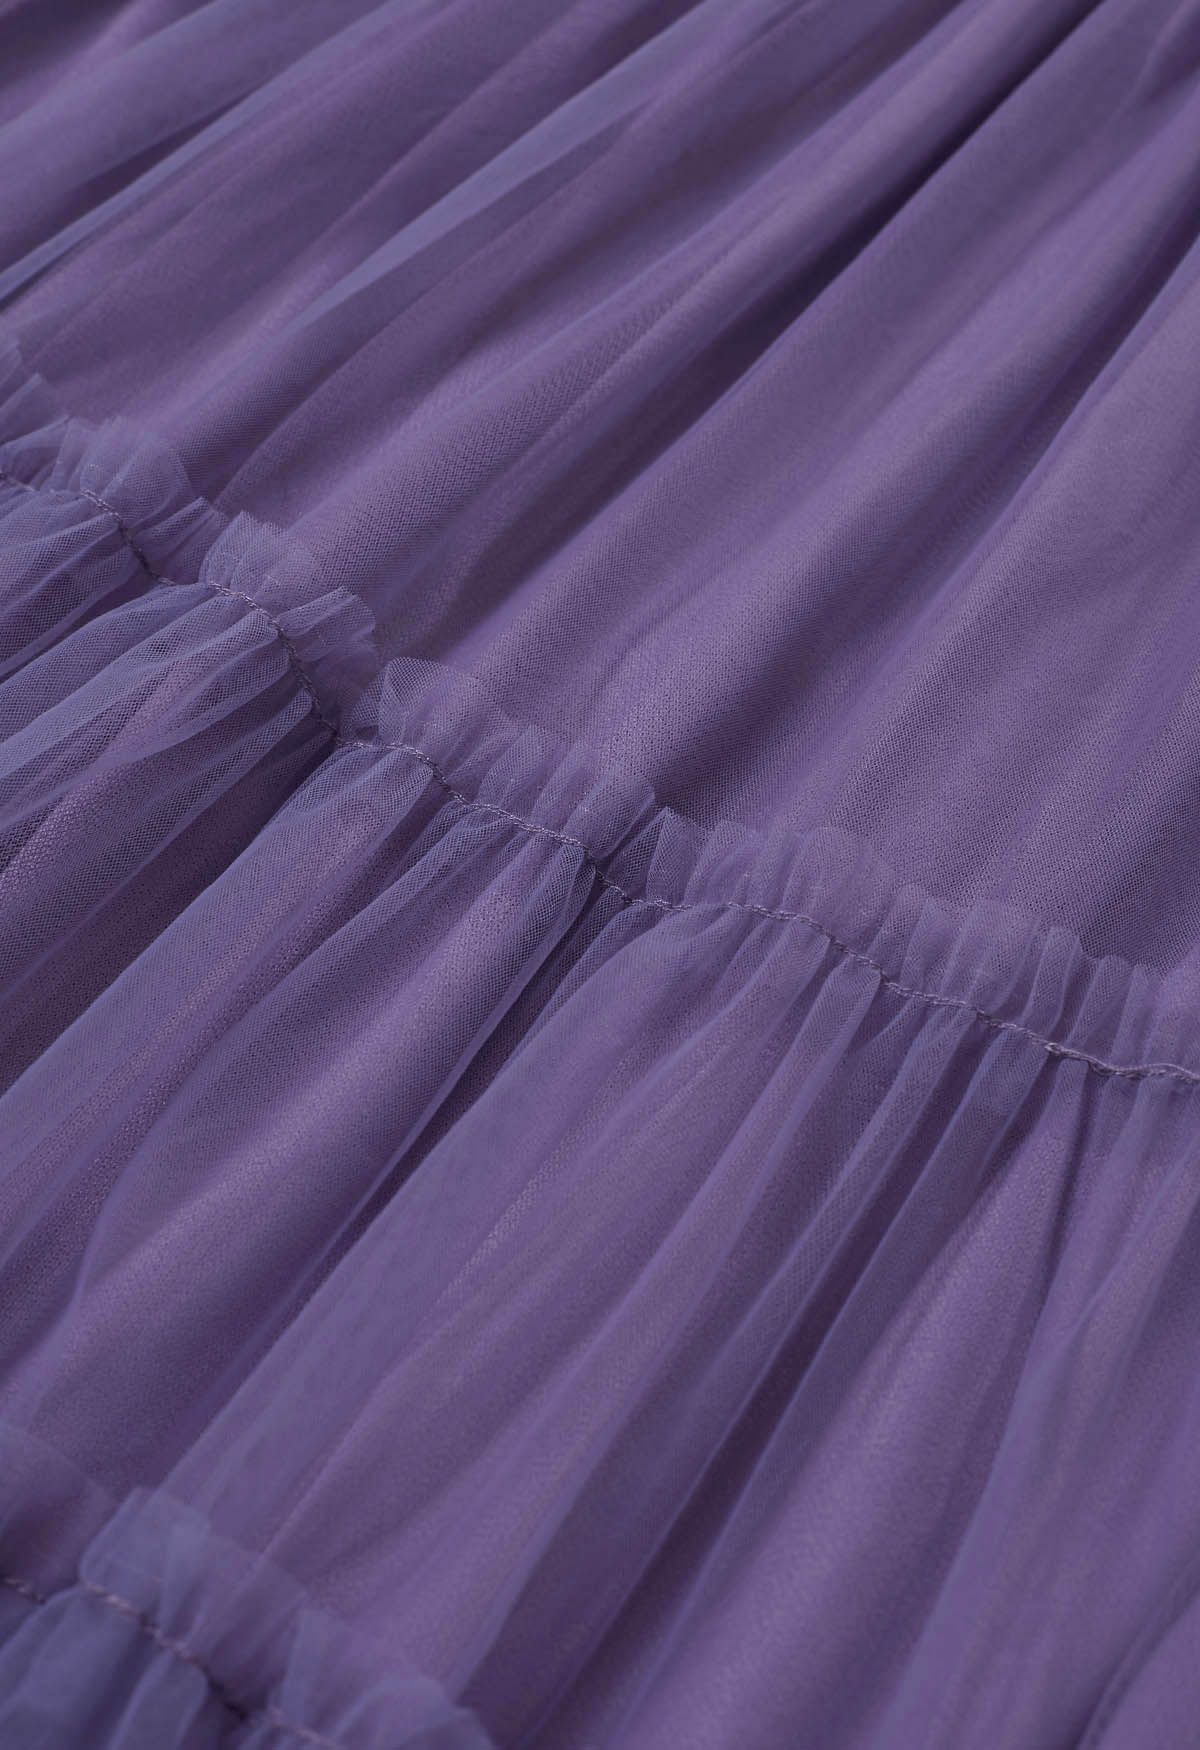 Ruffles Adorned Mesh Tulle Midi Skirt in Purple